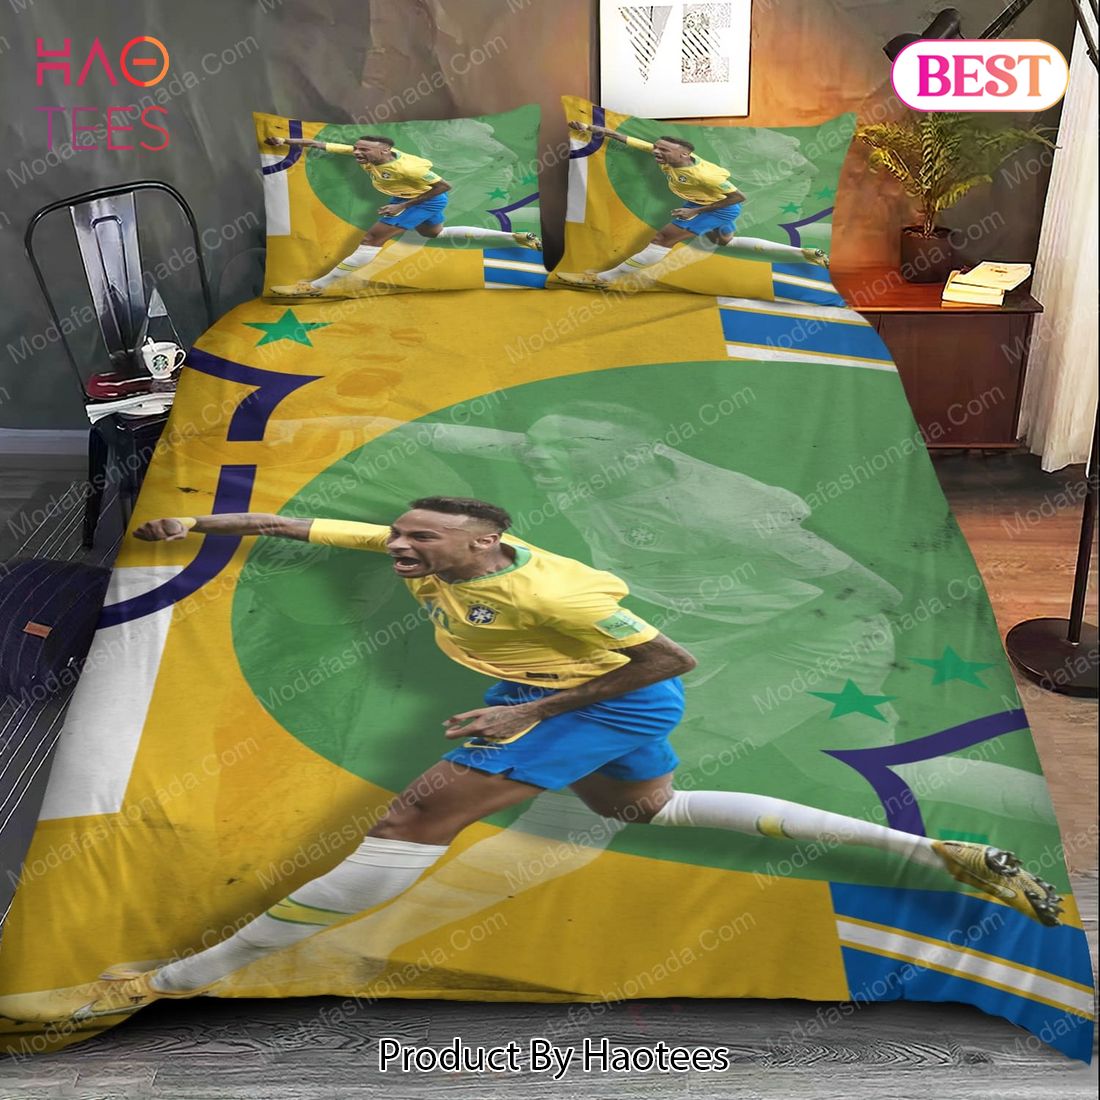 Buy Neymar Brazil Bedding Sets 02 Bed Sets, Bedroom Sets, Comforter Sets, Duvet Cover, Bedspread